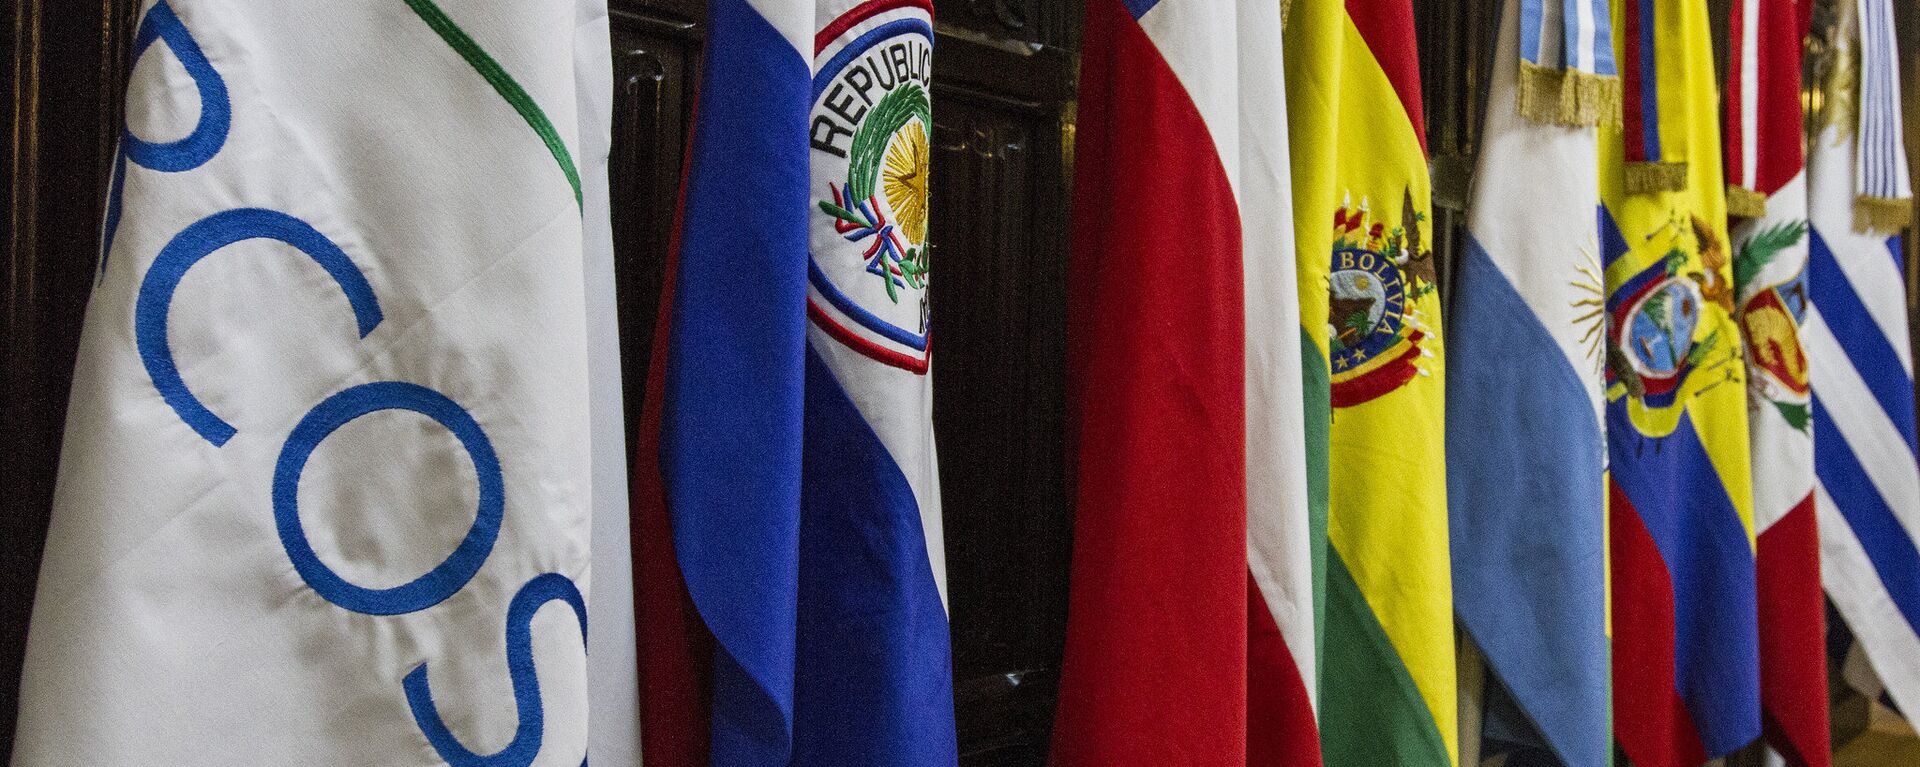 Banderas de los países miembros del Mercosur - Sputnik Mundo, 1920, 17.02.2021